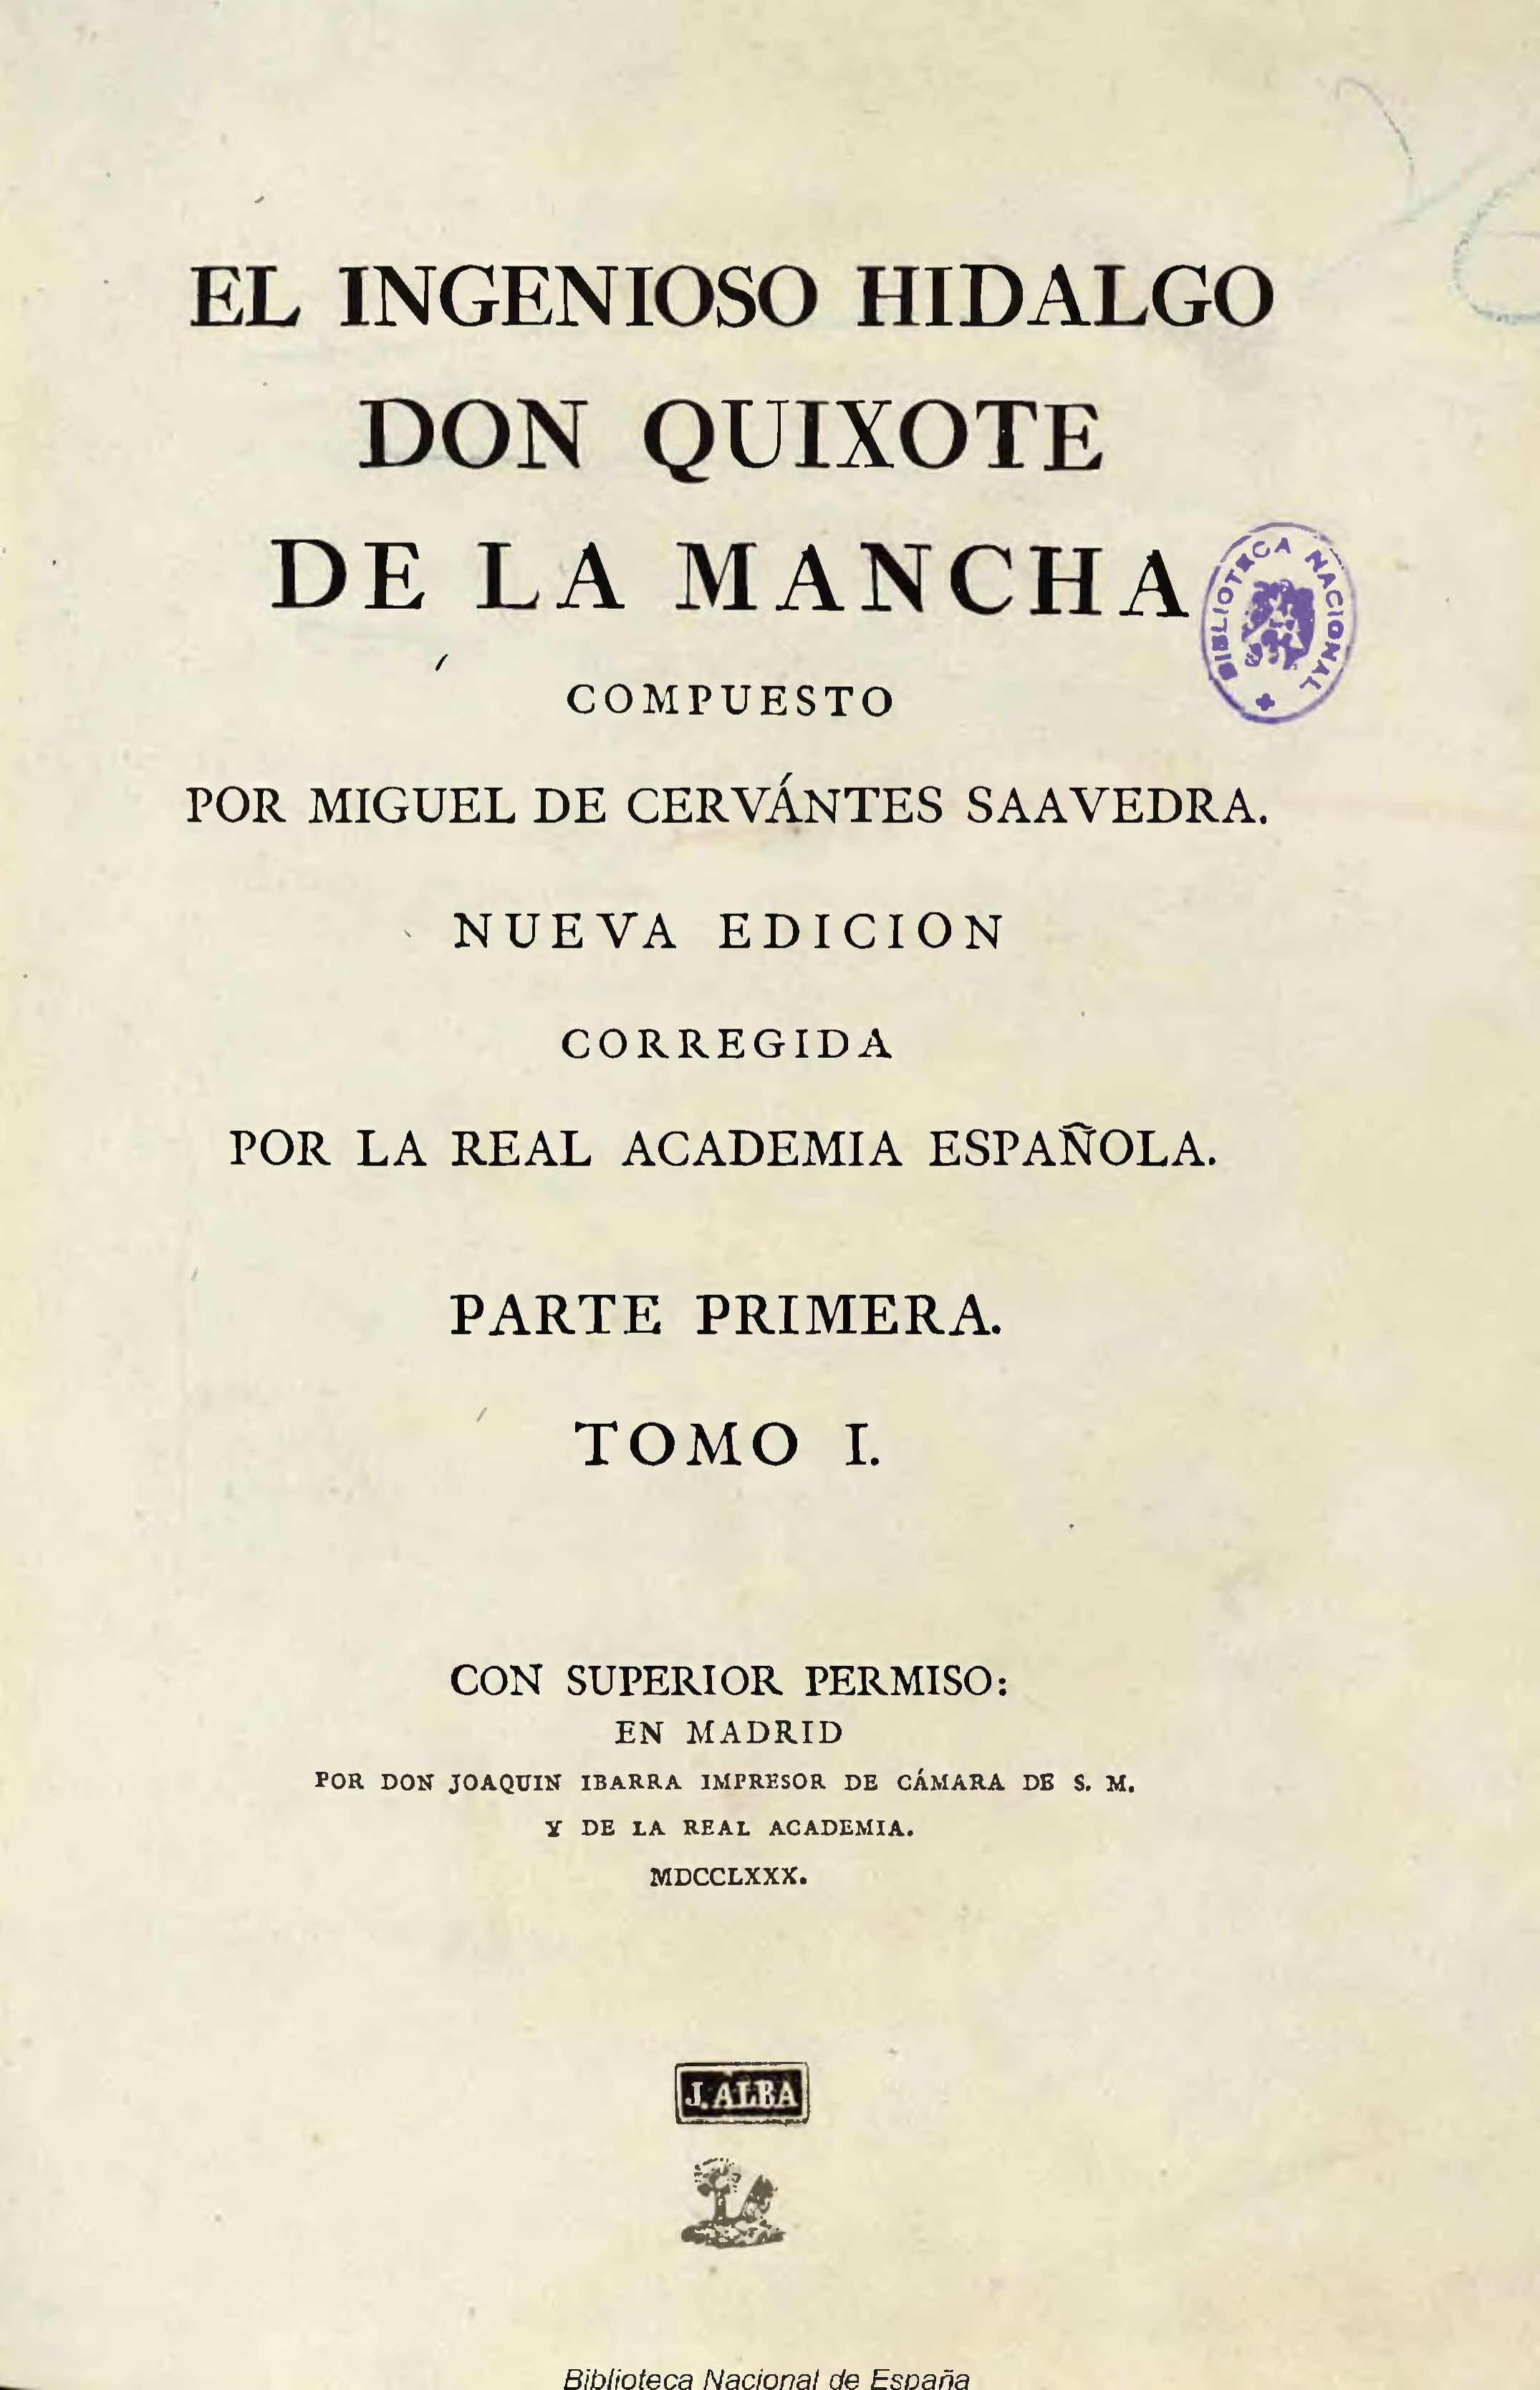 El ingenioso hidalgo don Quixote de la Mancha, compuesto por Miguel de Cervantes Saavedra